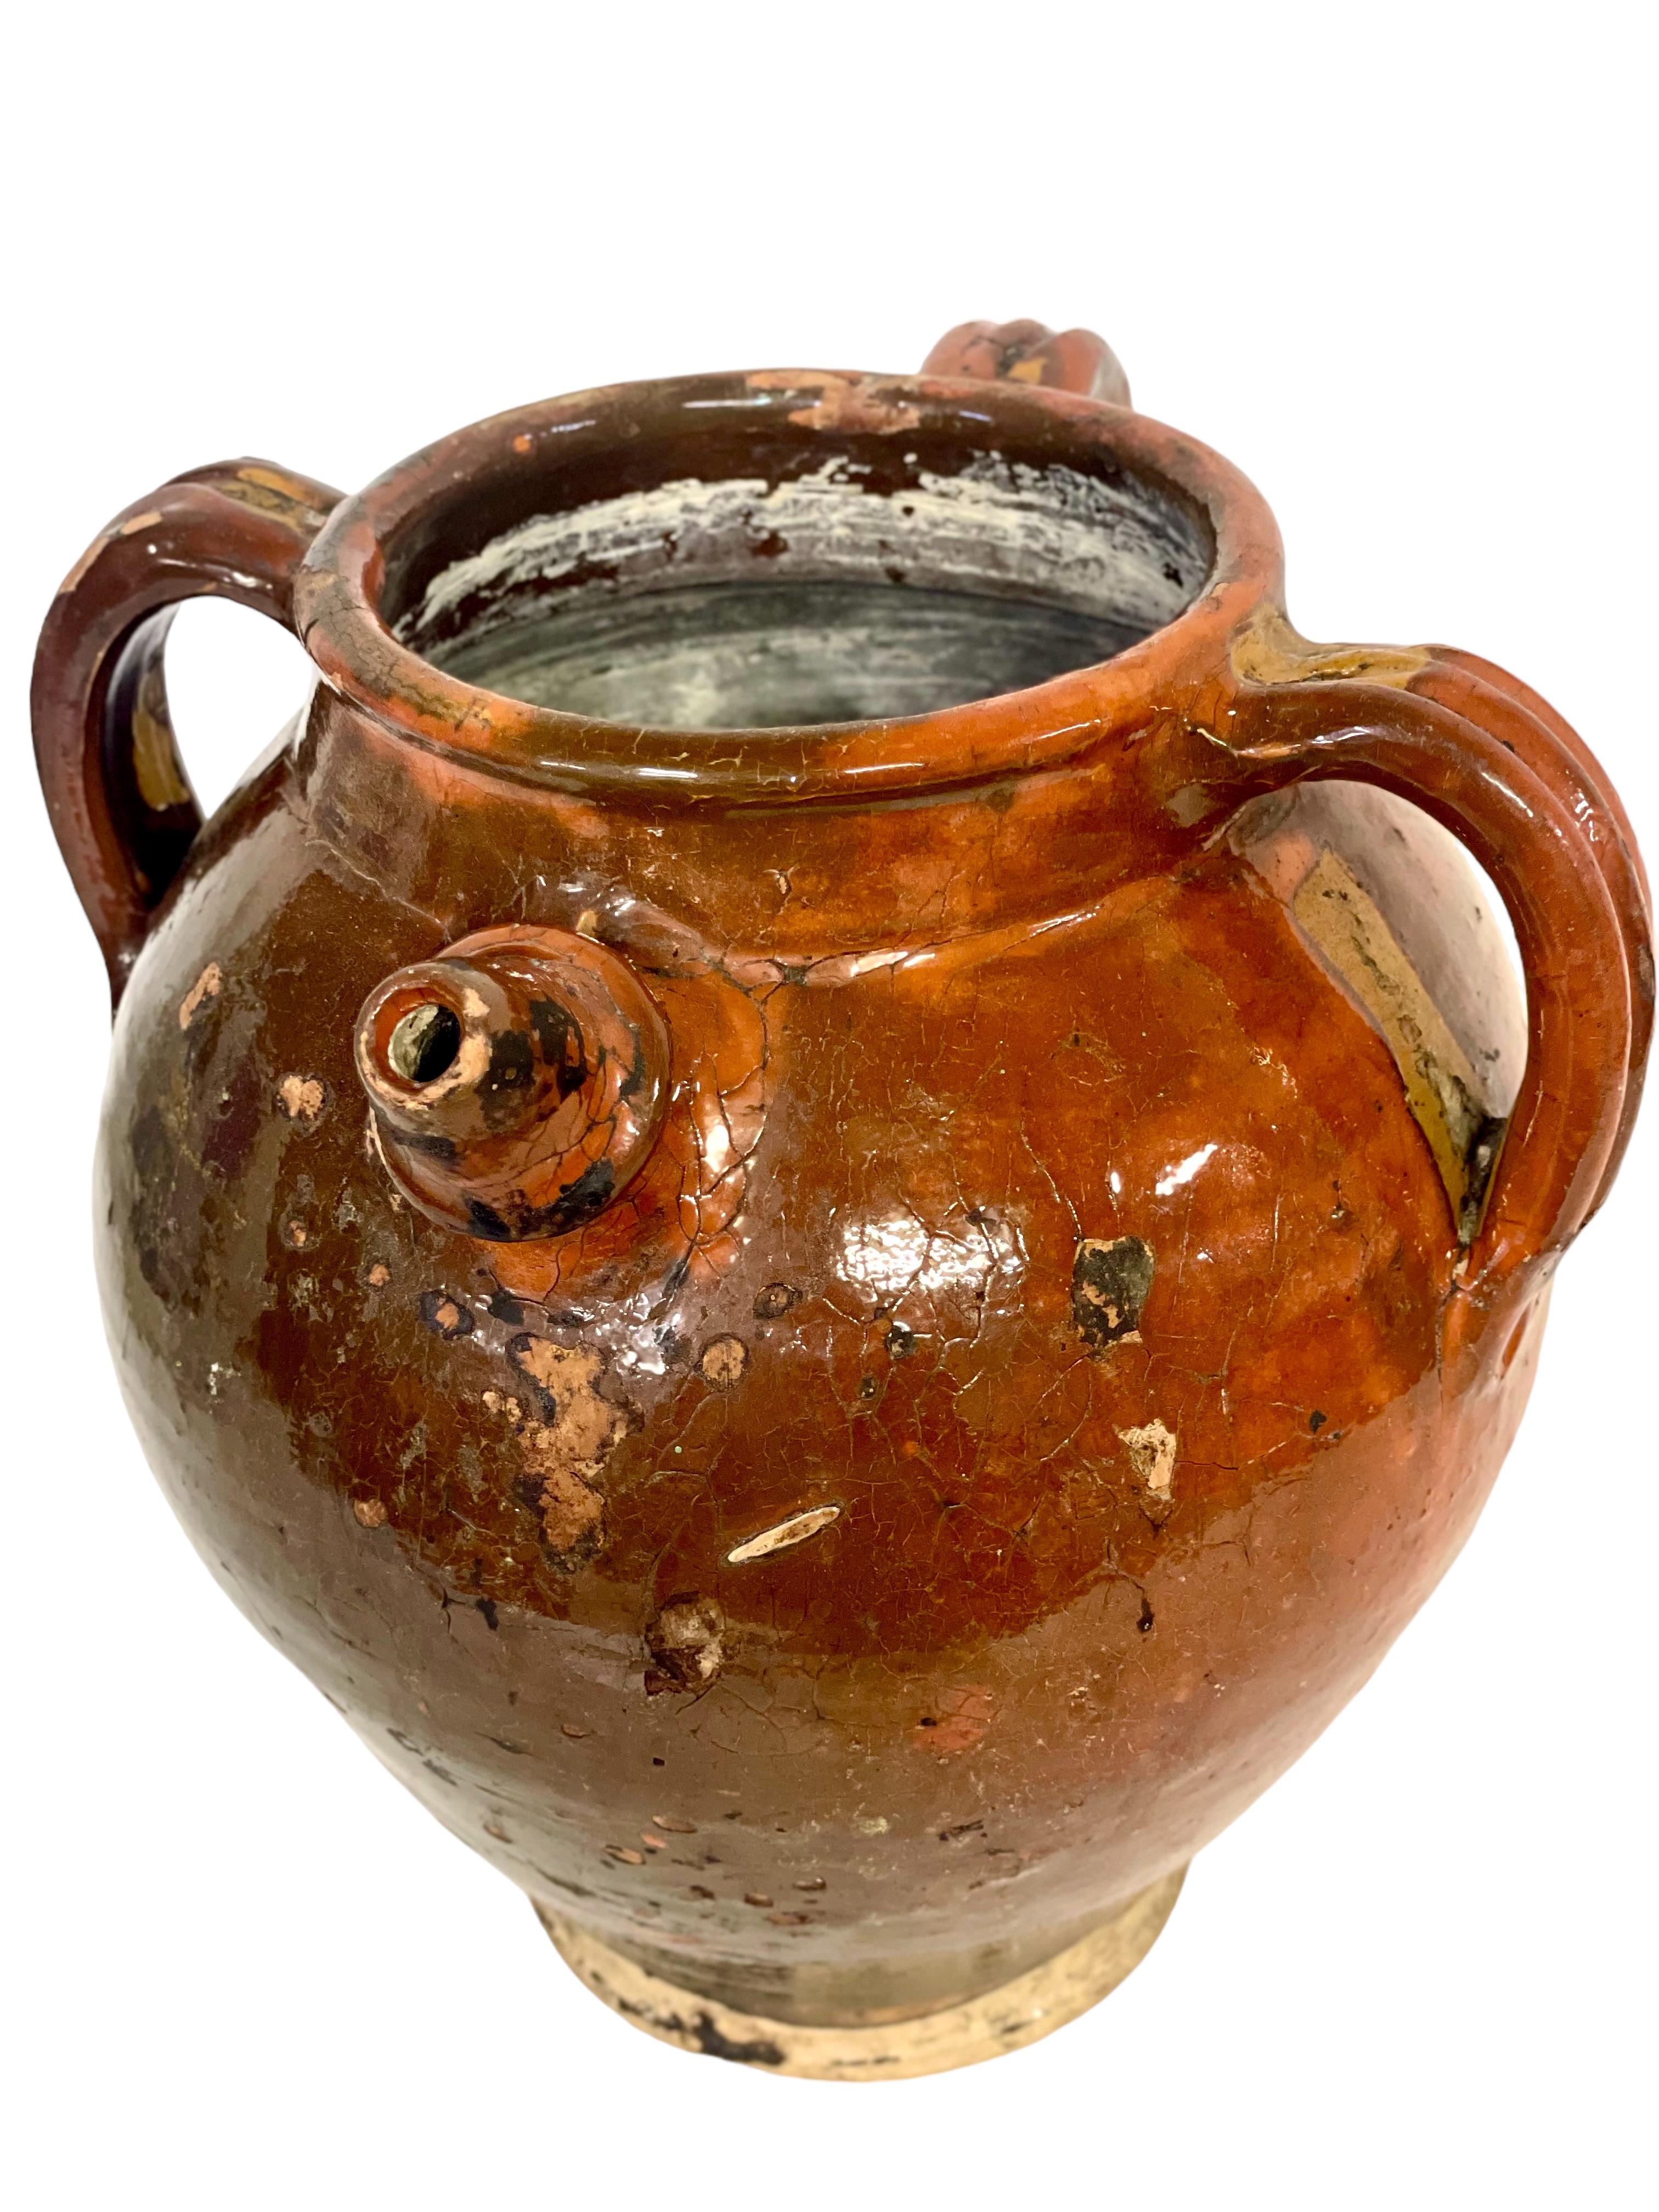 Ein wunderschöner Wasser- oder Olivenölkrug aus dem 19. Jahrhundert, innen und außen in warmen, rustikalen Braun- und Grüntönen glasiert. Dieses ungewöhnliche Vorratsgefäß mit Charakter verfügt über einen kurzen, geformten Ausguss und drei kräftige